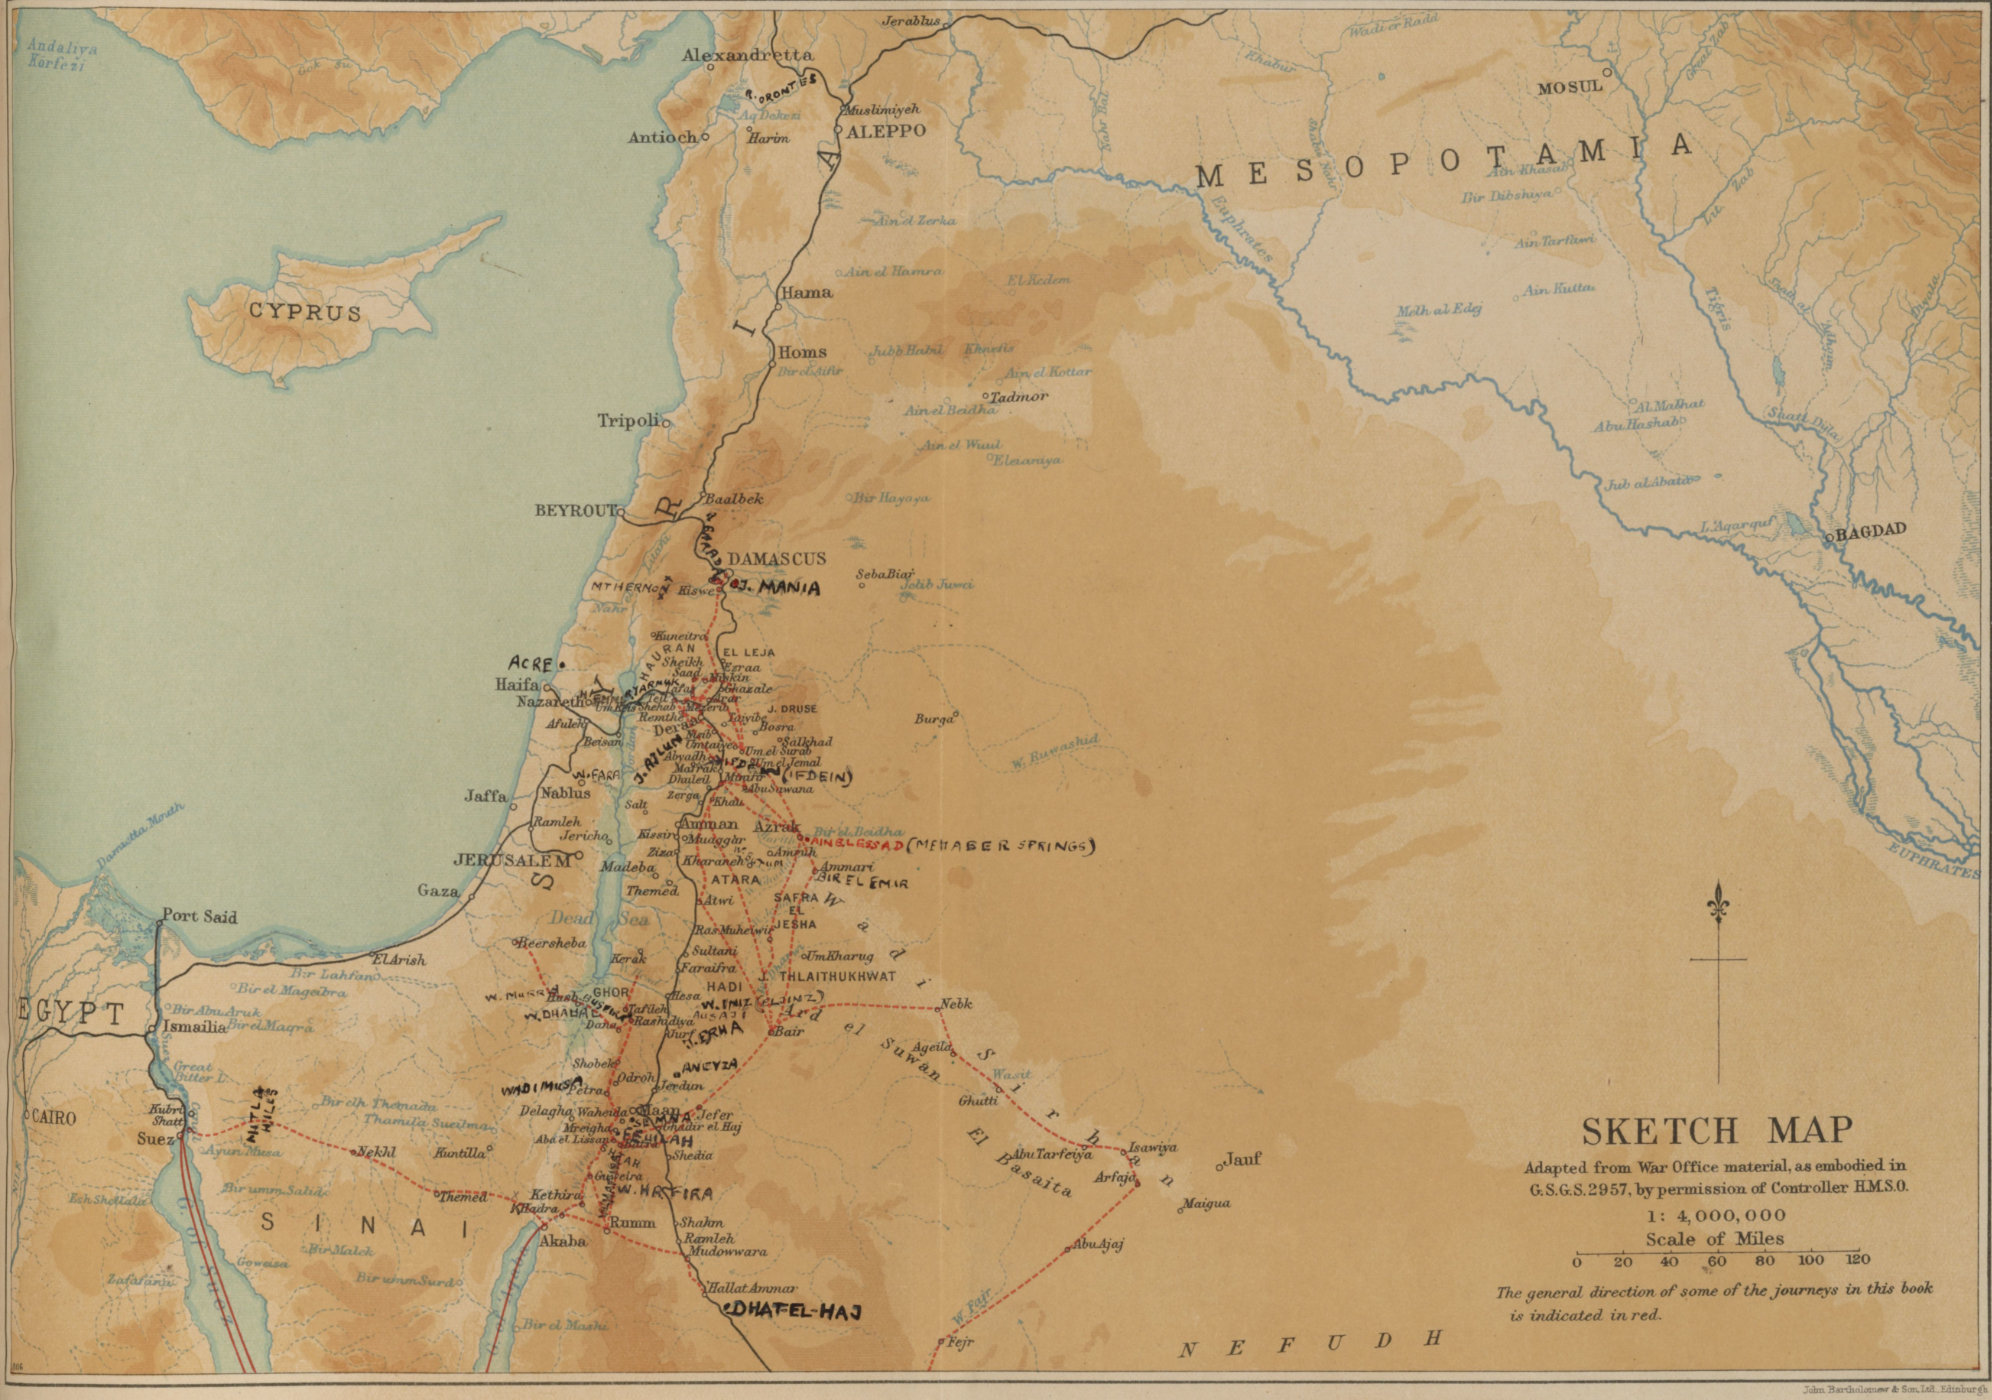 Period map of the eastern Mediterranean region: the Levant, Egypt, Sinai, Mesopotamia, etc.